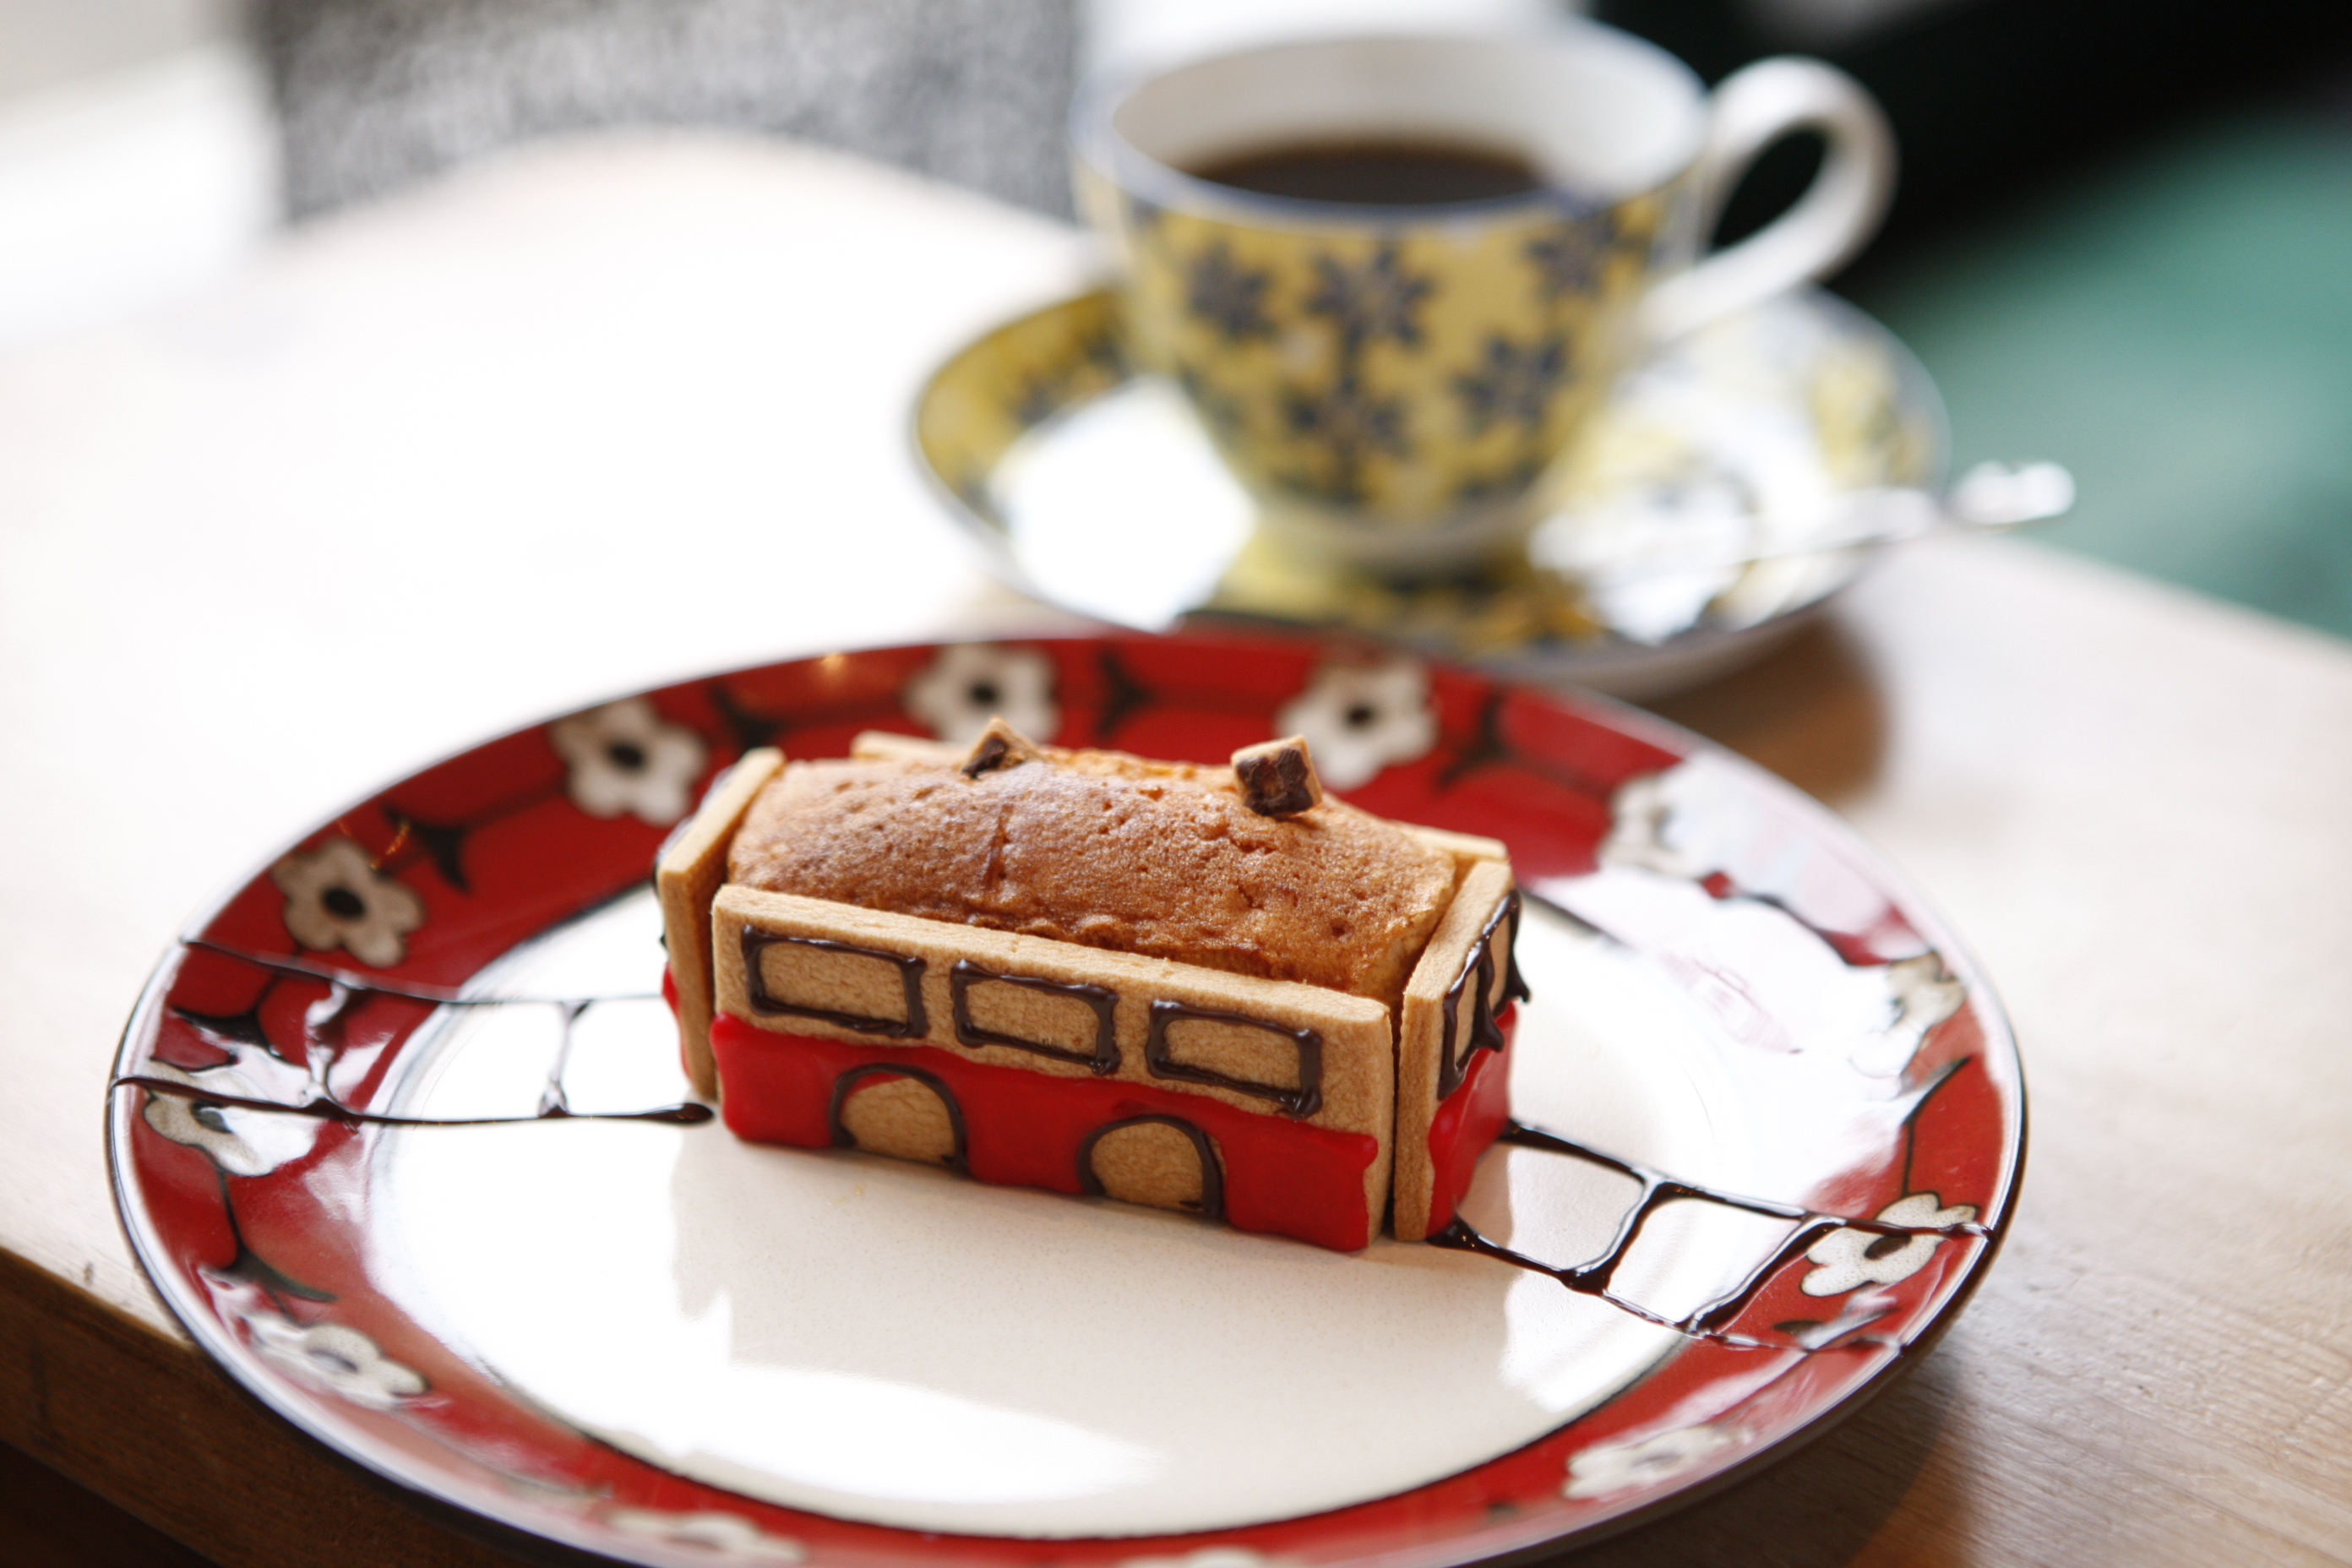 スタジオカフェ シマ 登山電車型のケーキがかわいい 強羅のカフェ 箱根辞典 By 自遊人